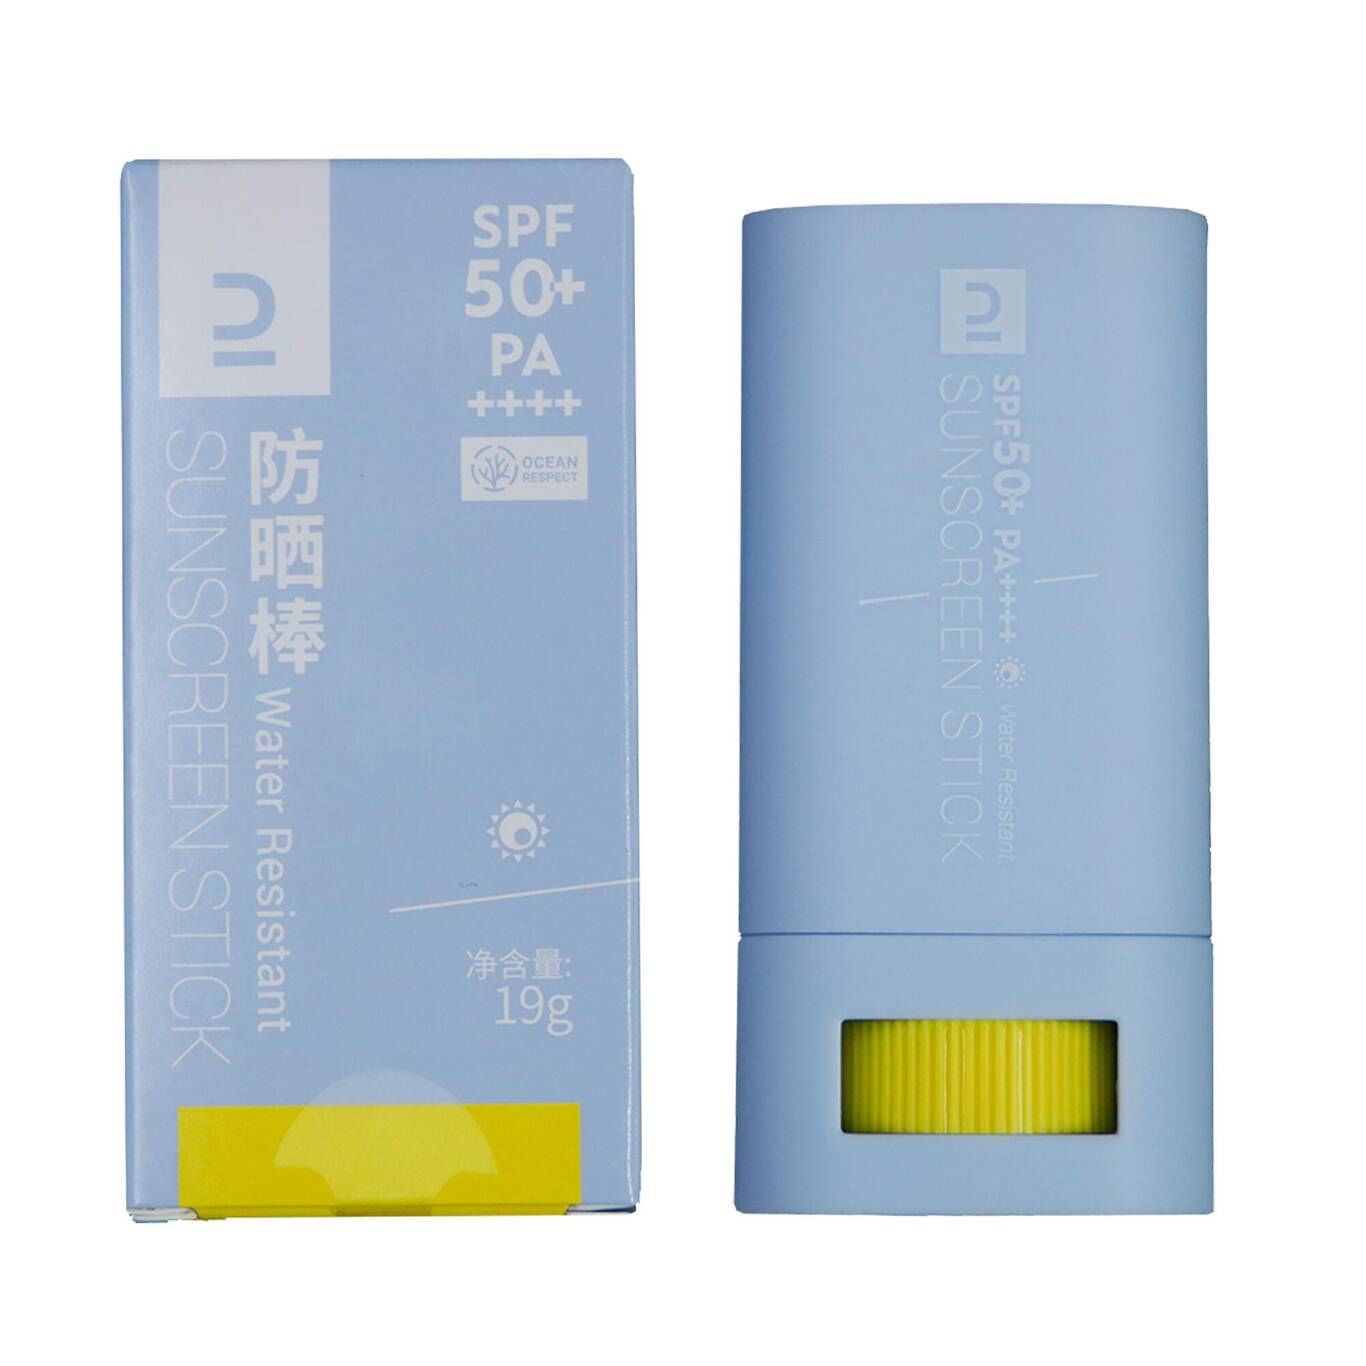 CN Sunscreen stick 18g SPF 50+